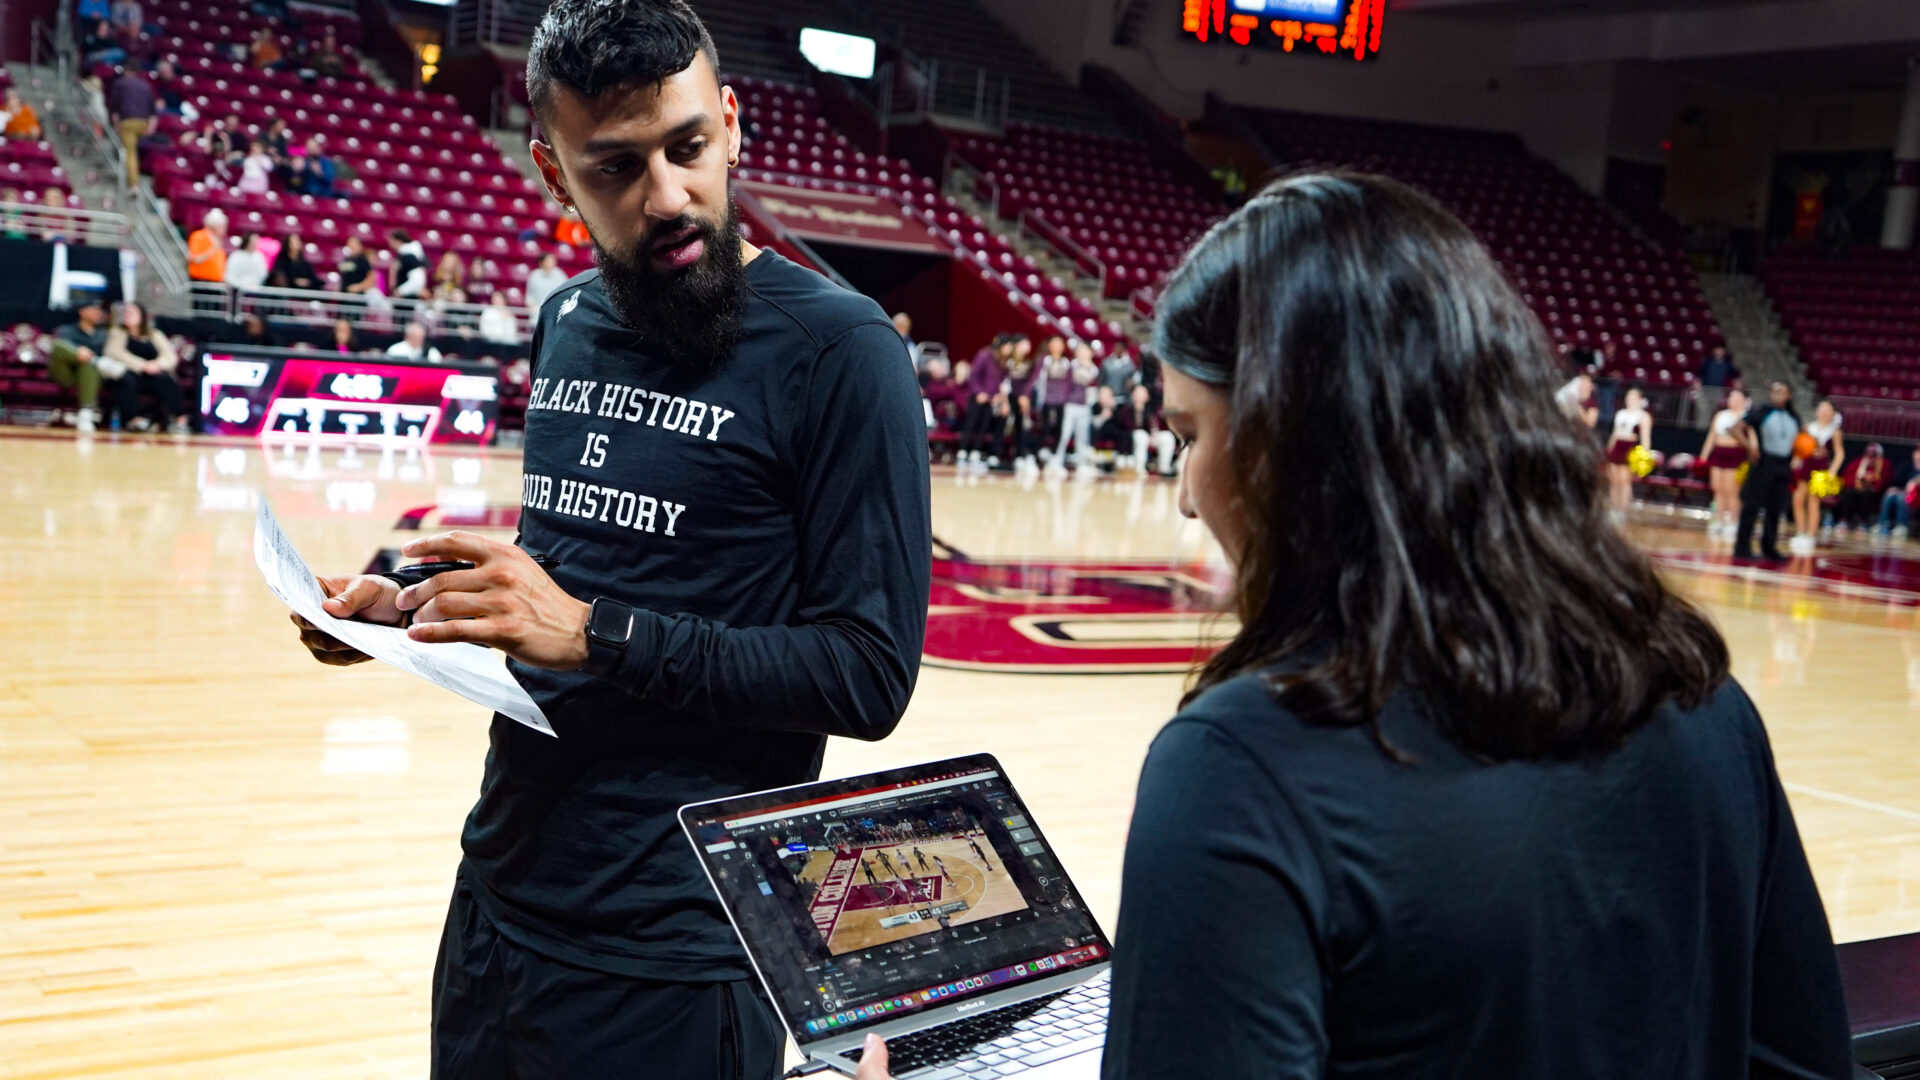 Em um ambiente dinâmico na quadra, um membro da equipe do Boston College utiliza a plataforma Catapult Pro Video Focus em um laptop para realizar análises de vídeo de basquete em tempo real. O fluxo de trabalho direto para bancada está em ação, exemplificando como a análise lateral instantânea capacita as equipes a tomar decisões estratégicas rápidas.